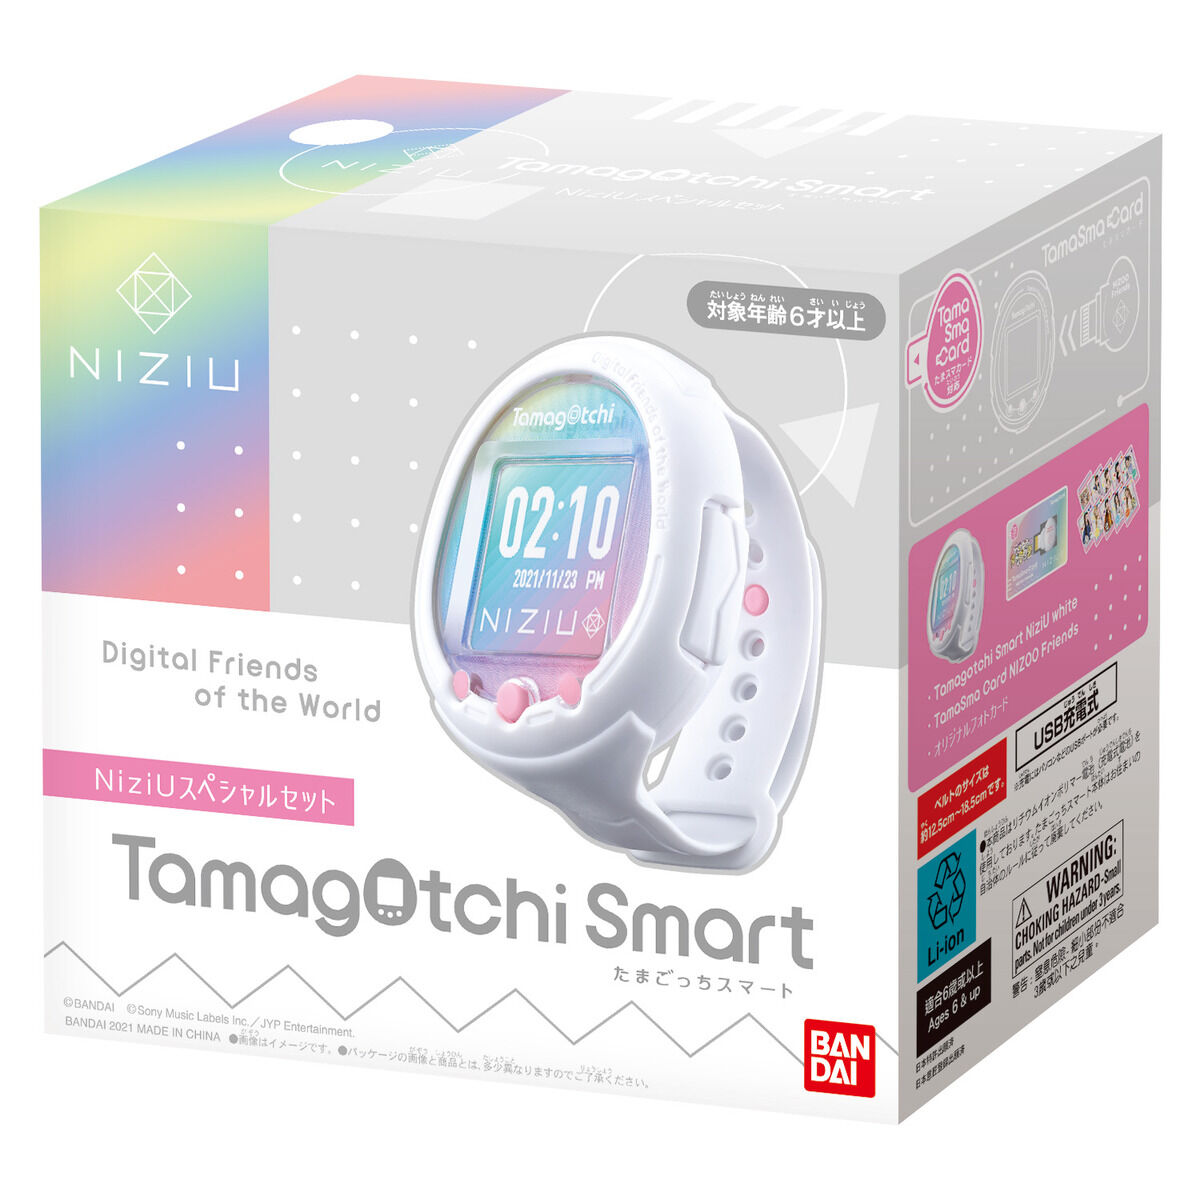 Tamagotchi Smart NiziUスペシャルセット | Tamagotchi Smart